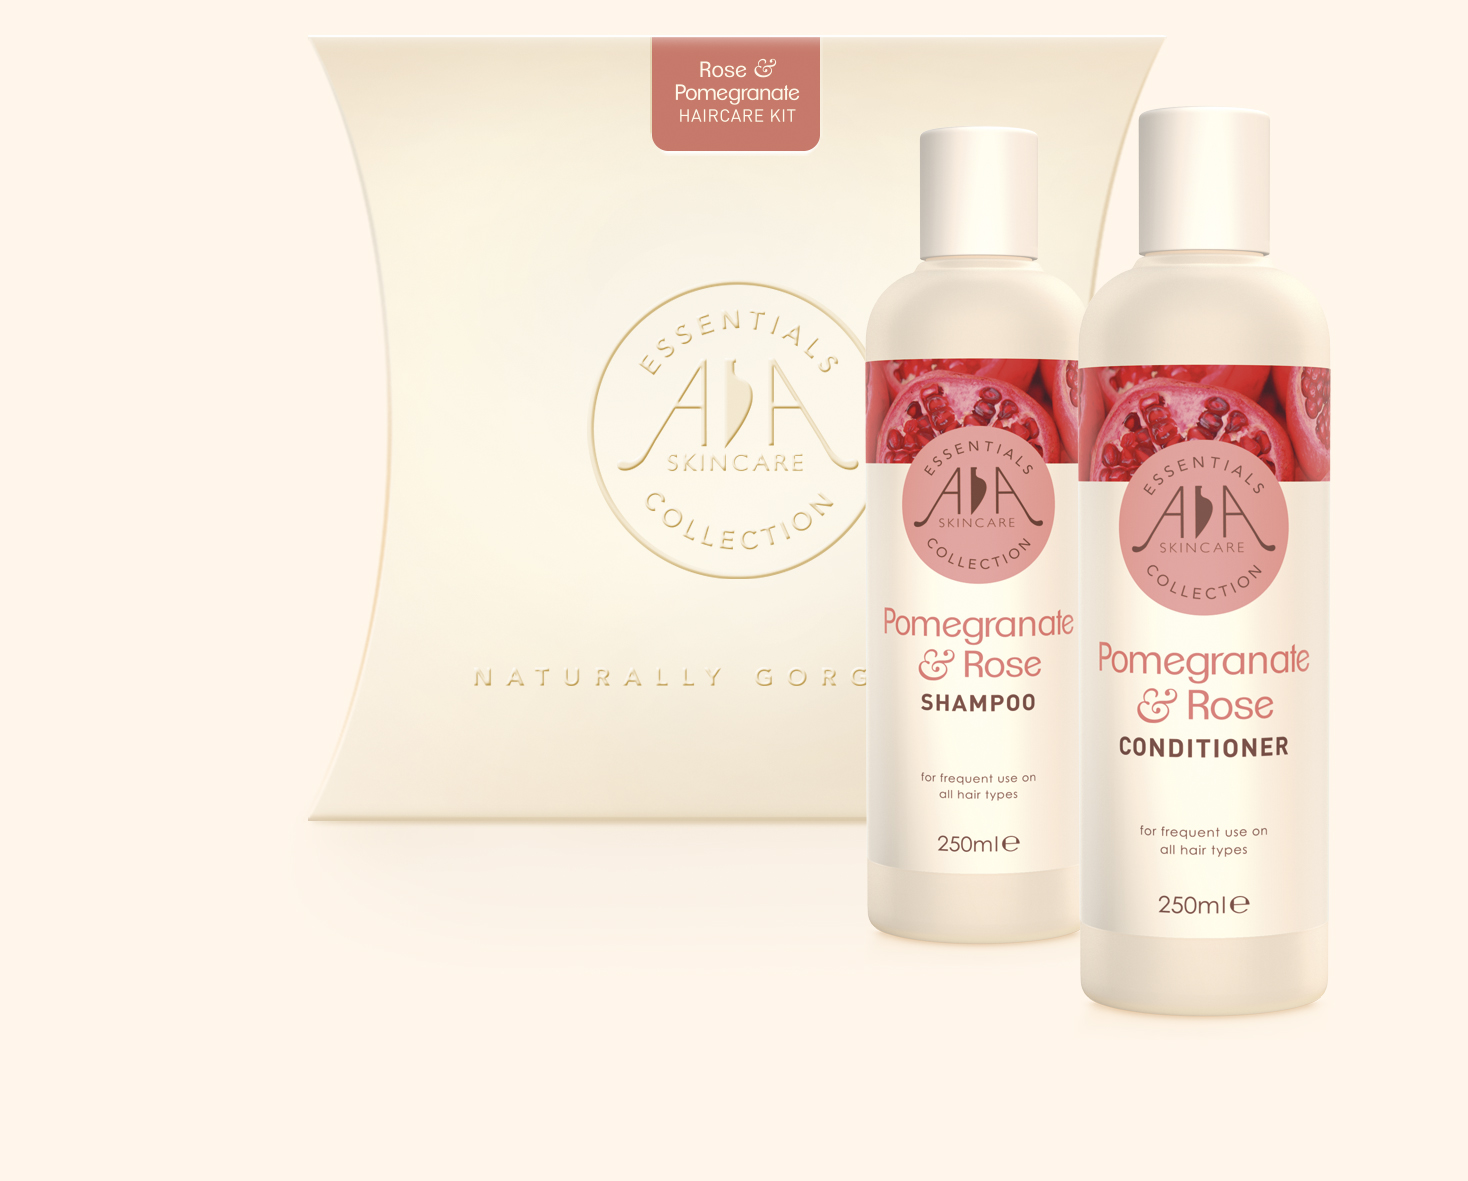 Rose & Pomegranate Hair Care Kit